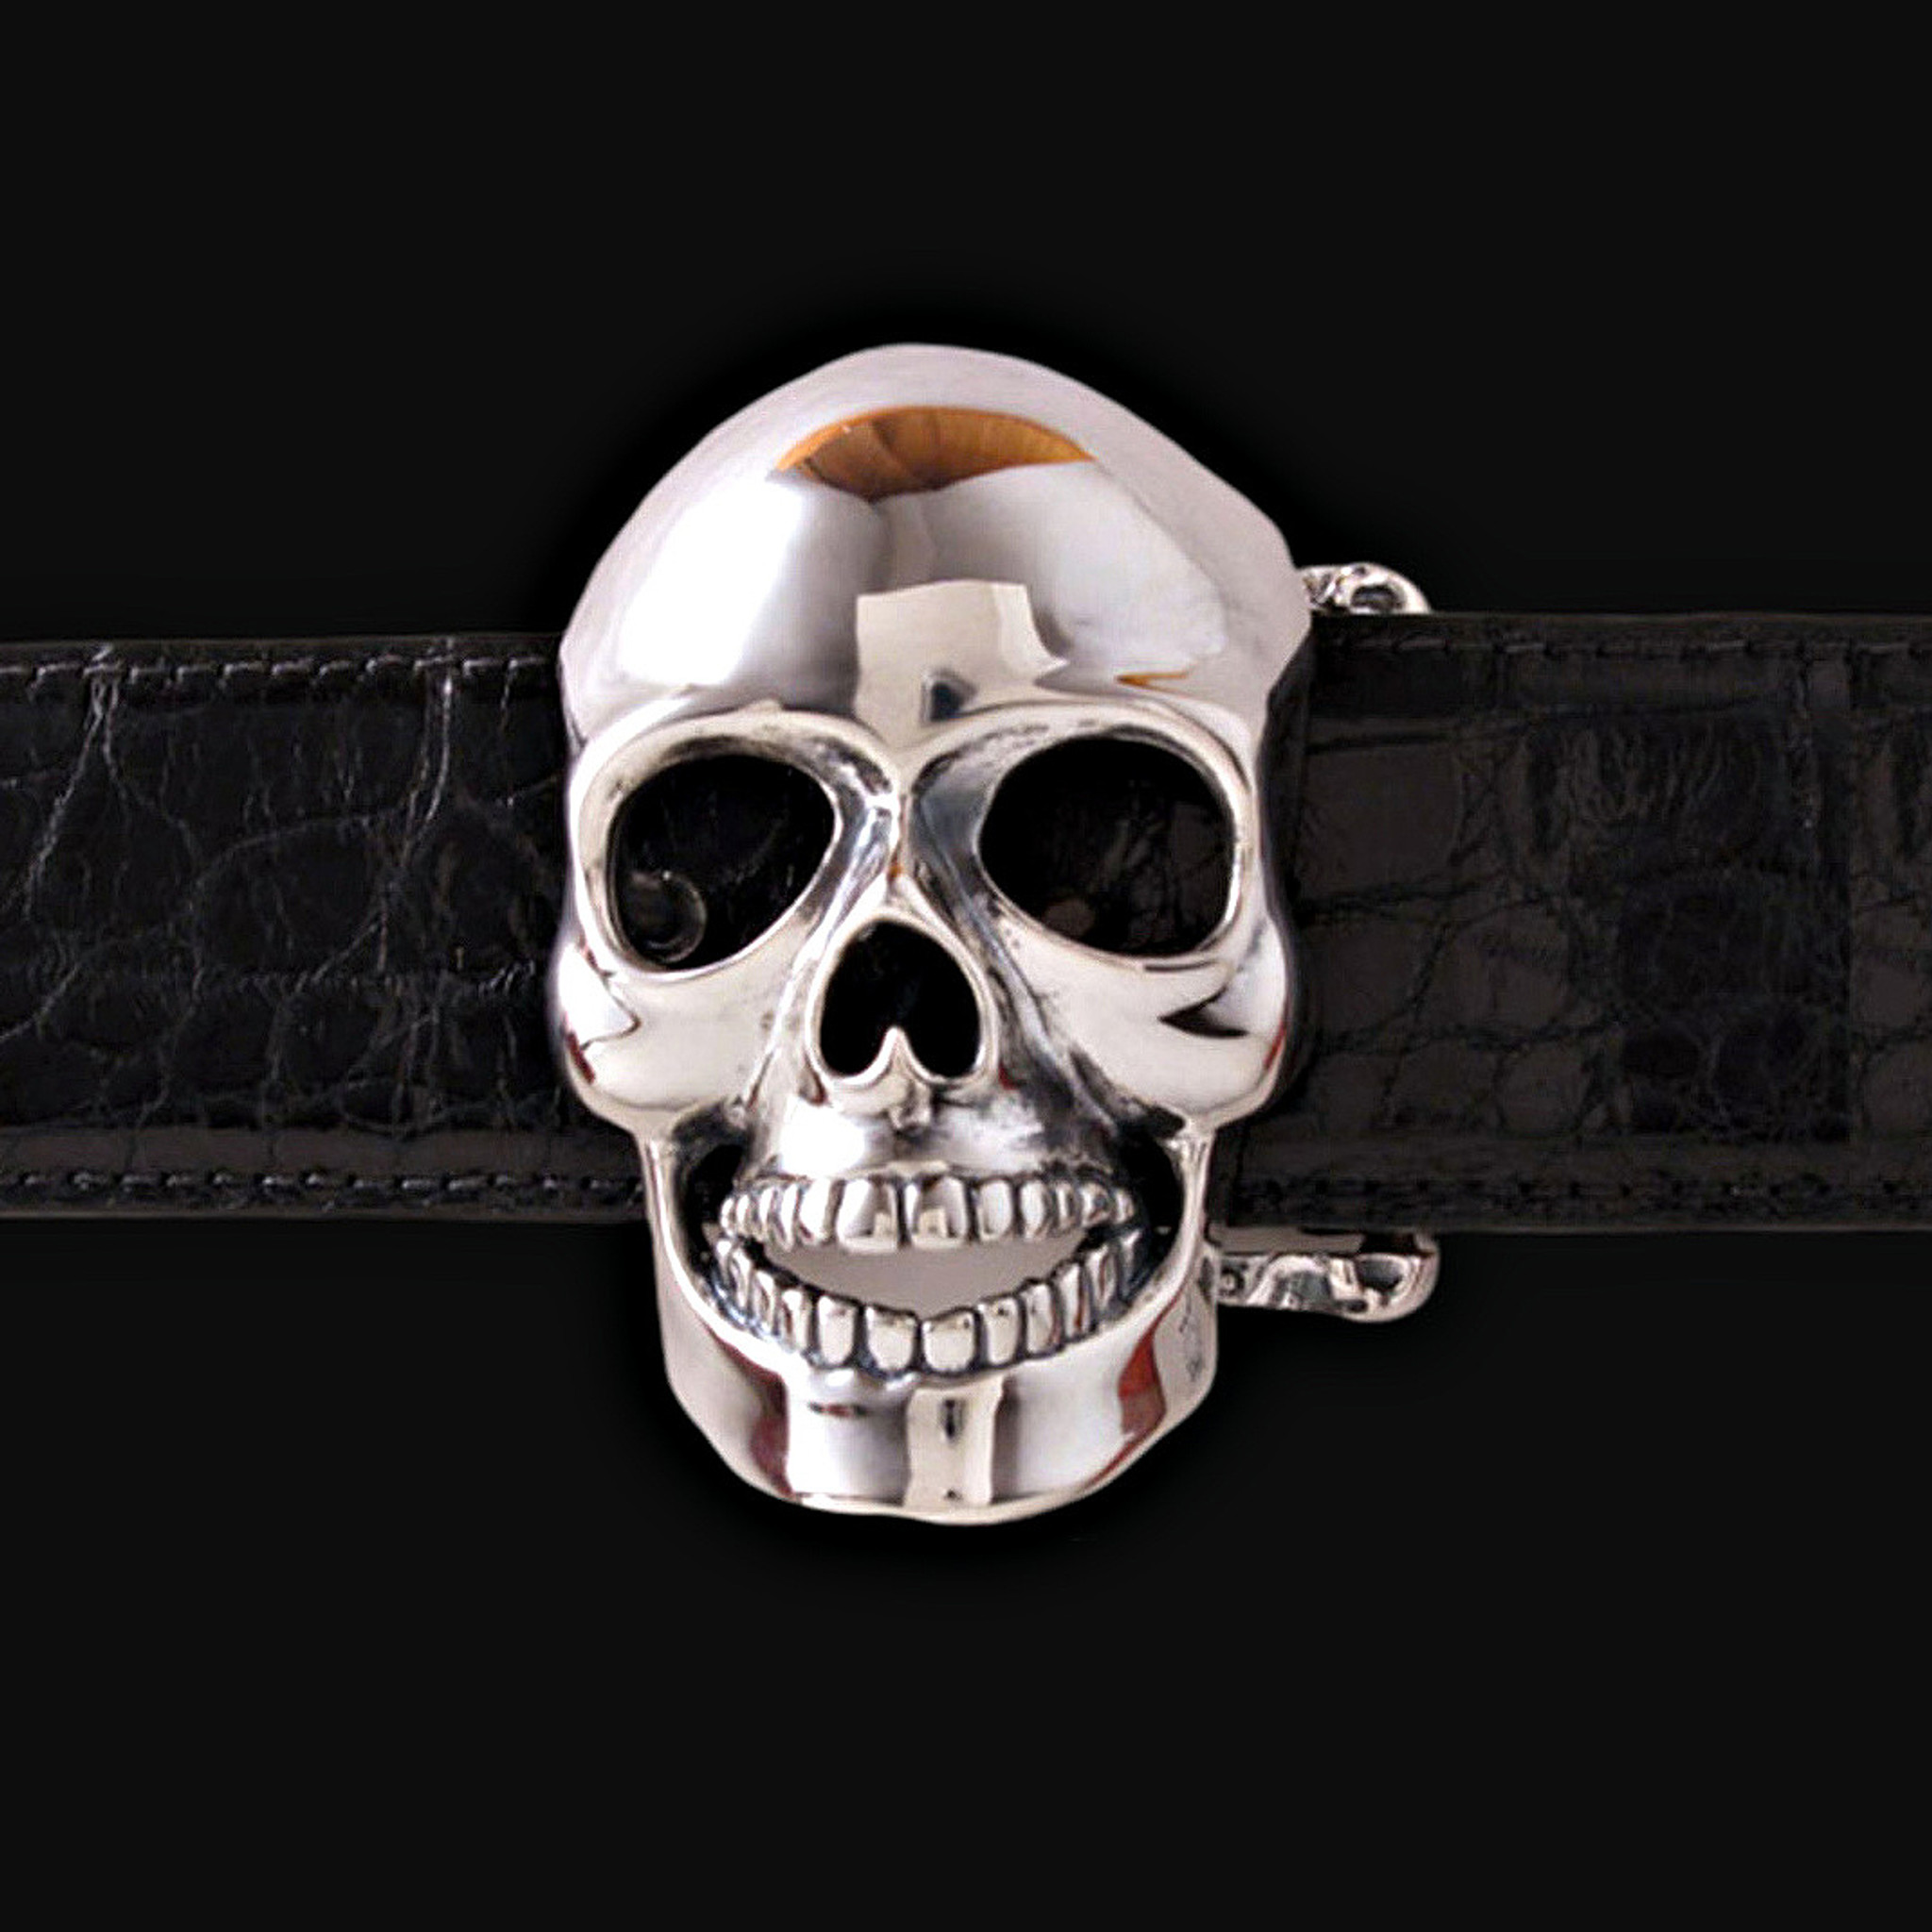 Guardian Skull Belt Buckle in Solid Sterling Silver